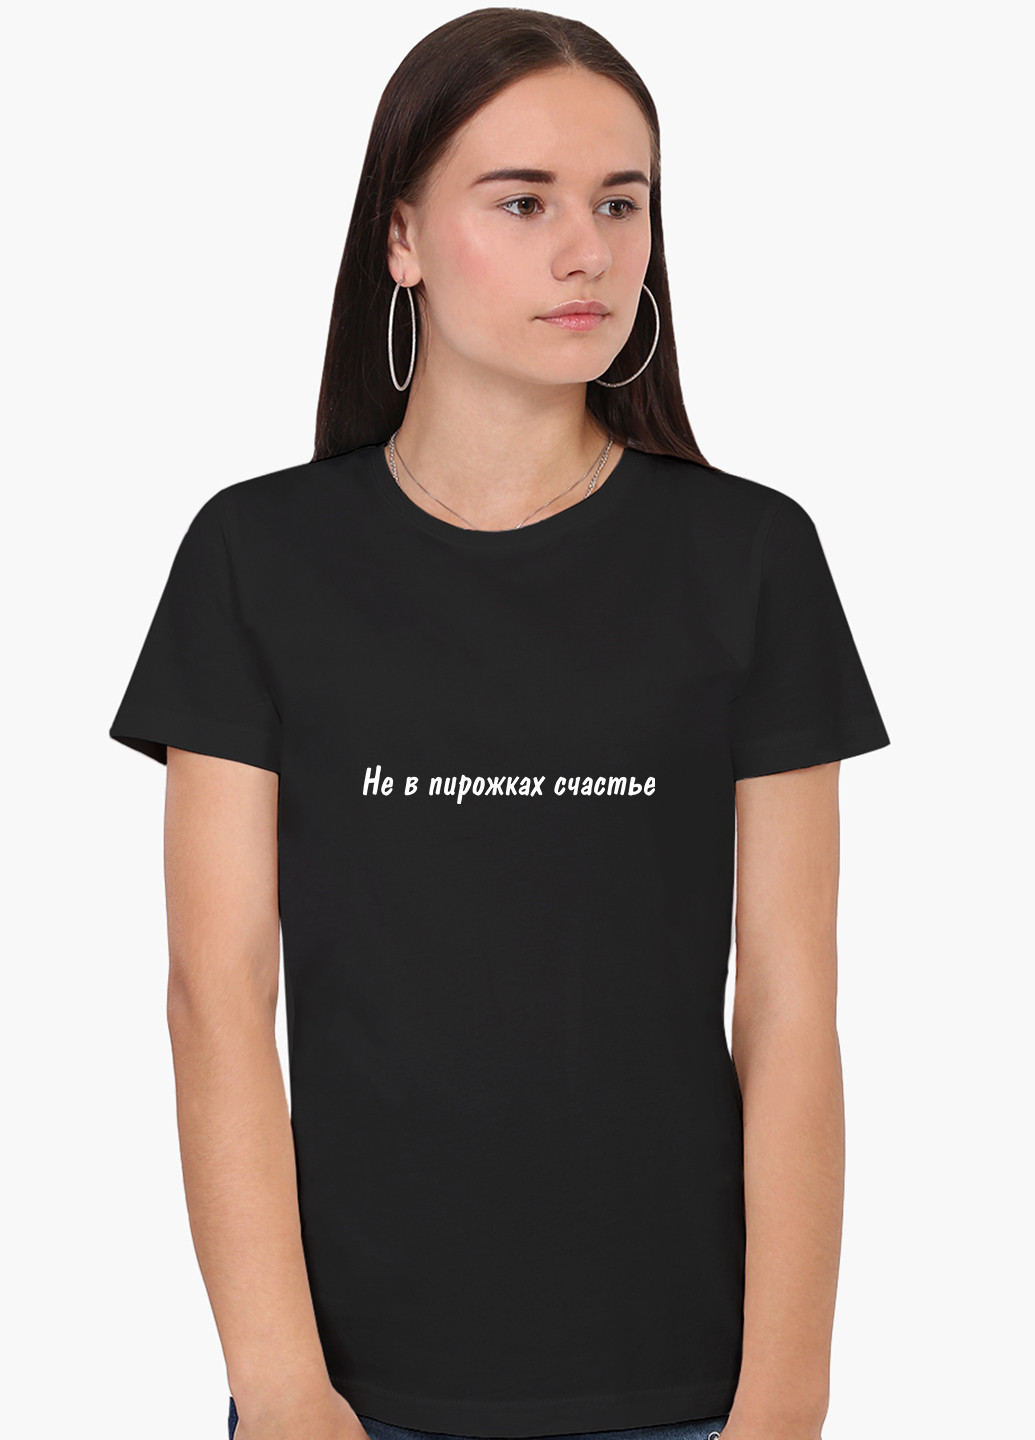 Чорна демісезон футболка жіноча чи не в пиріжках щастя (happiness is not in pies) (8976-1292) xxl MobiPrint